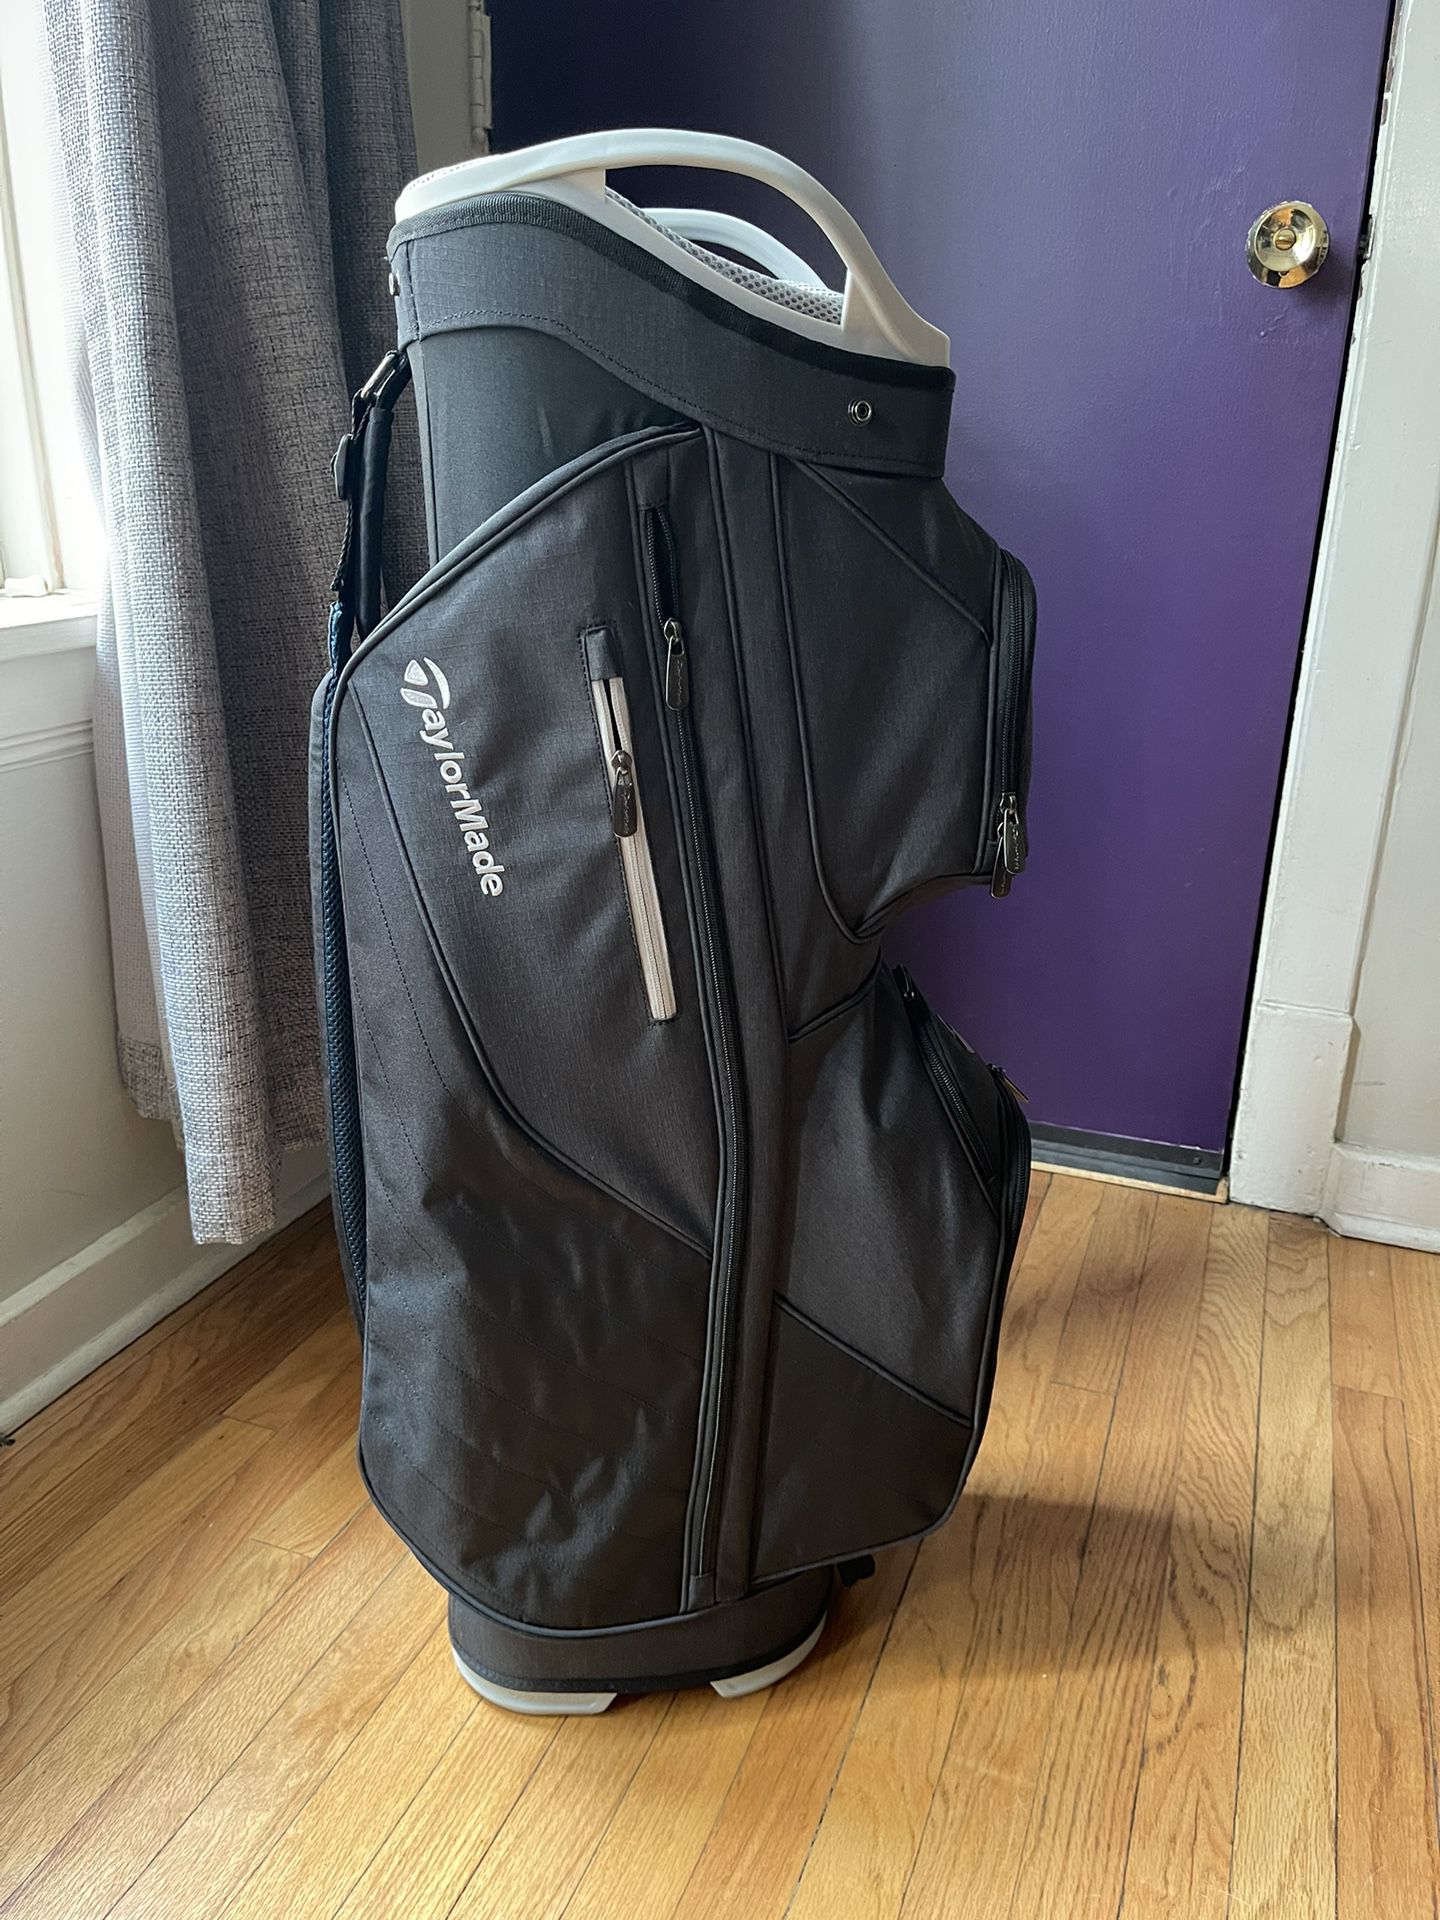 TaylorMade Women’s Kalea Lanai Golf Cart Bag